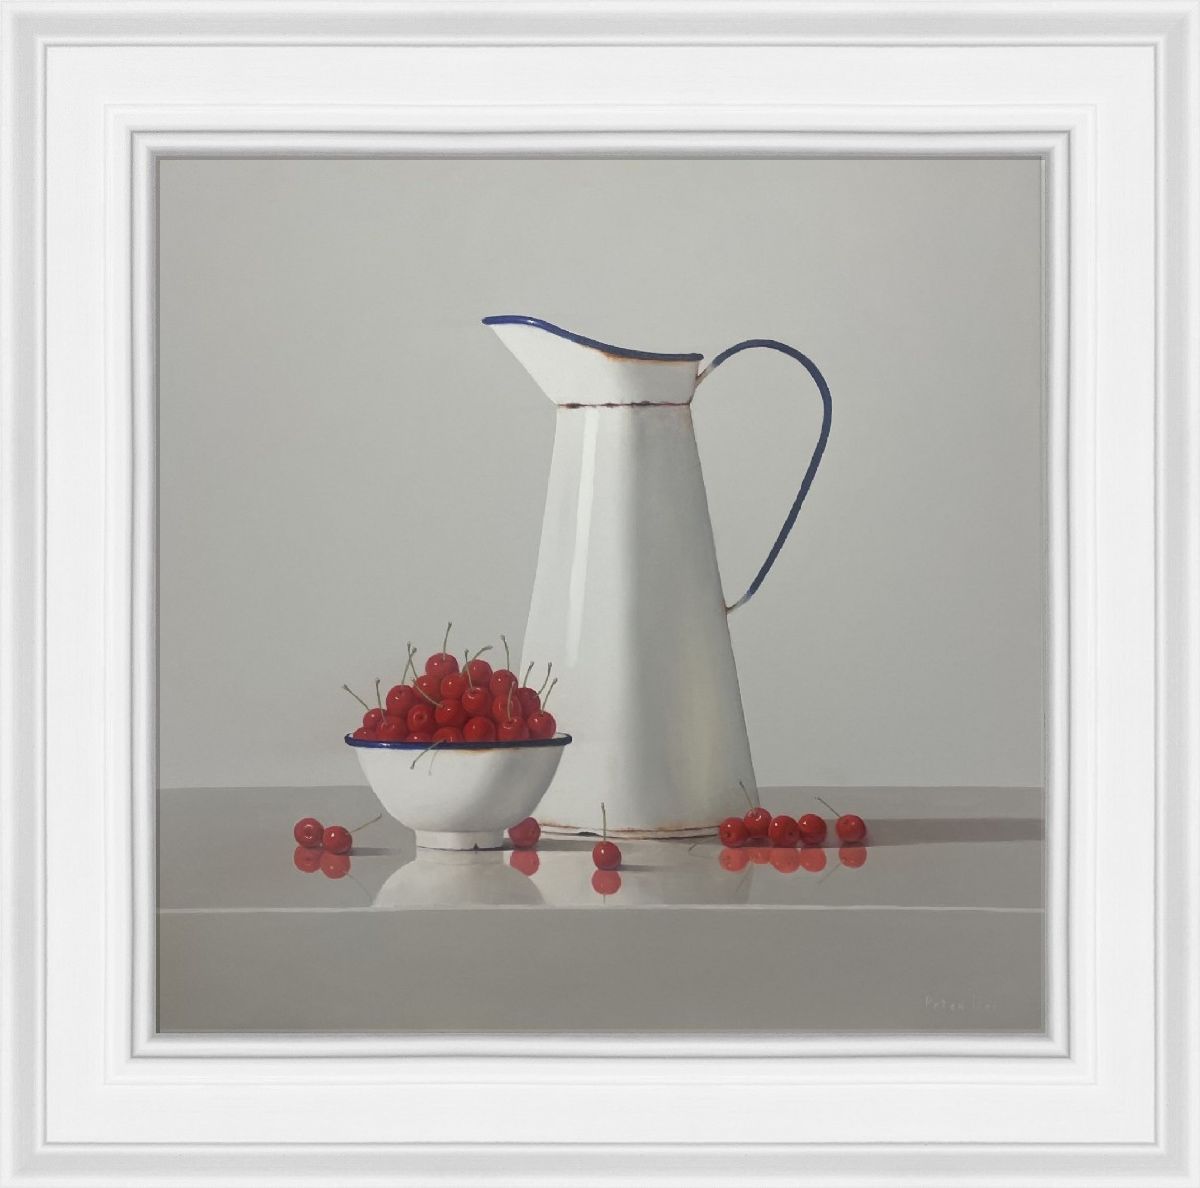 Vintage White Enamelware with Cherries by Peter Dee